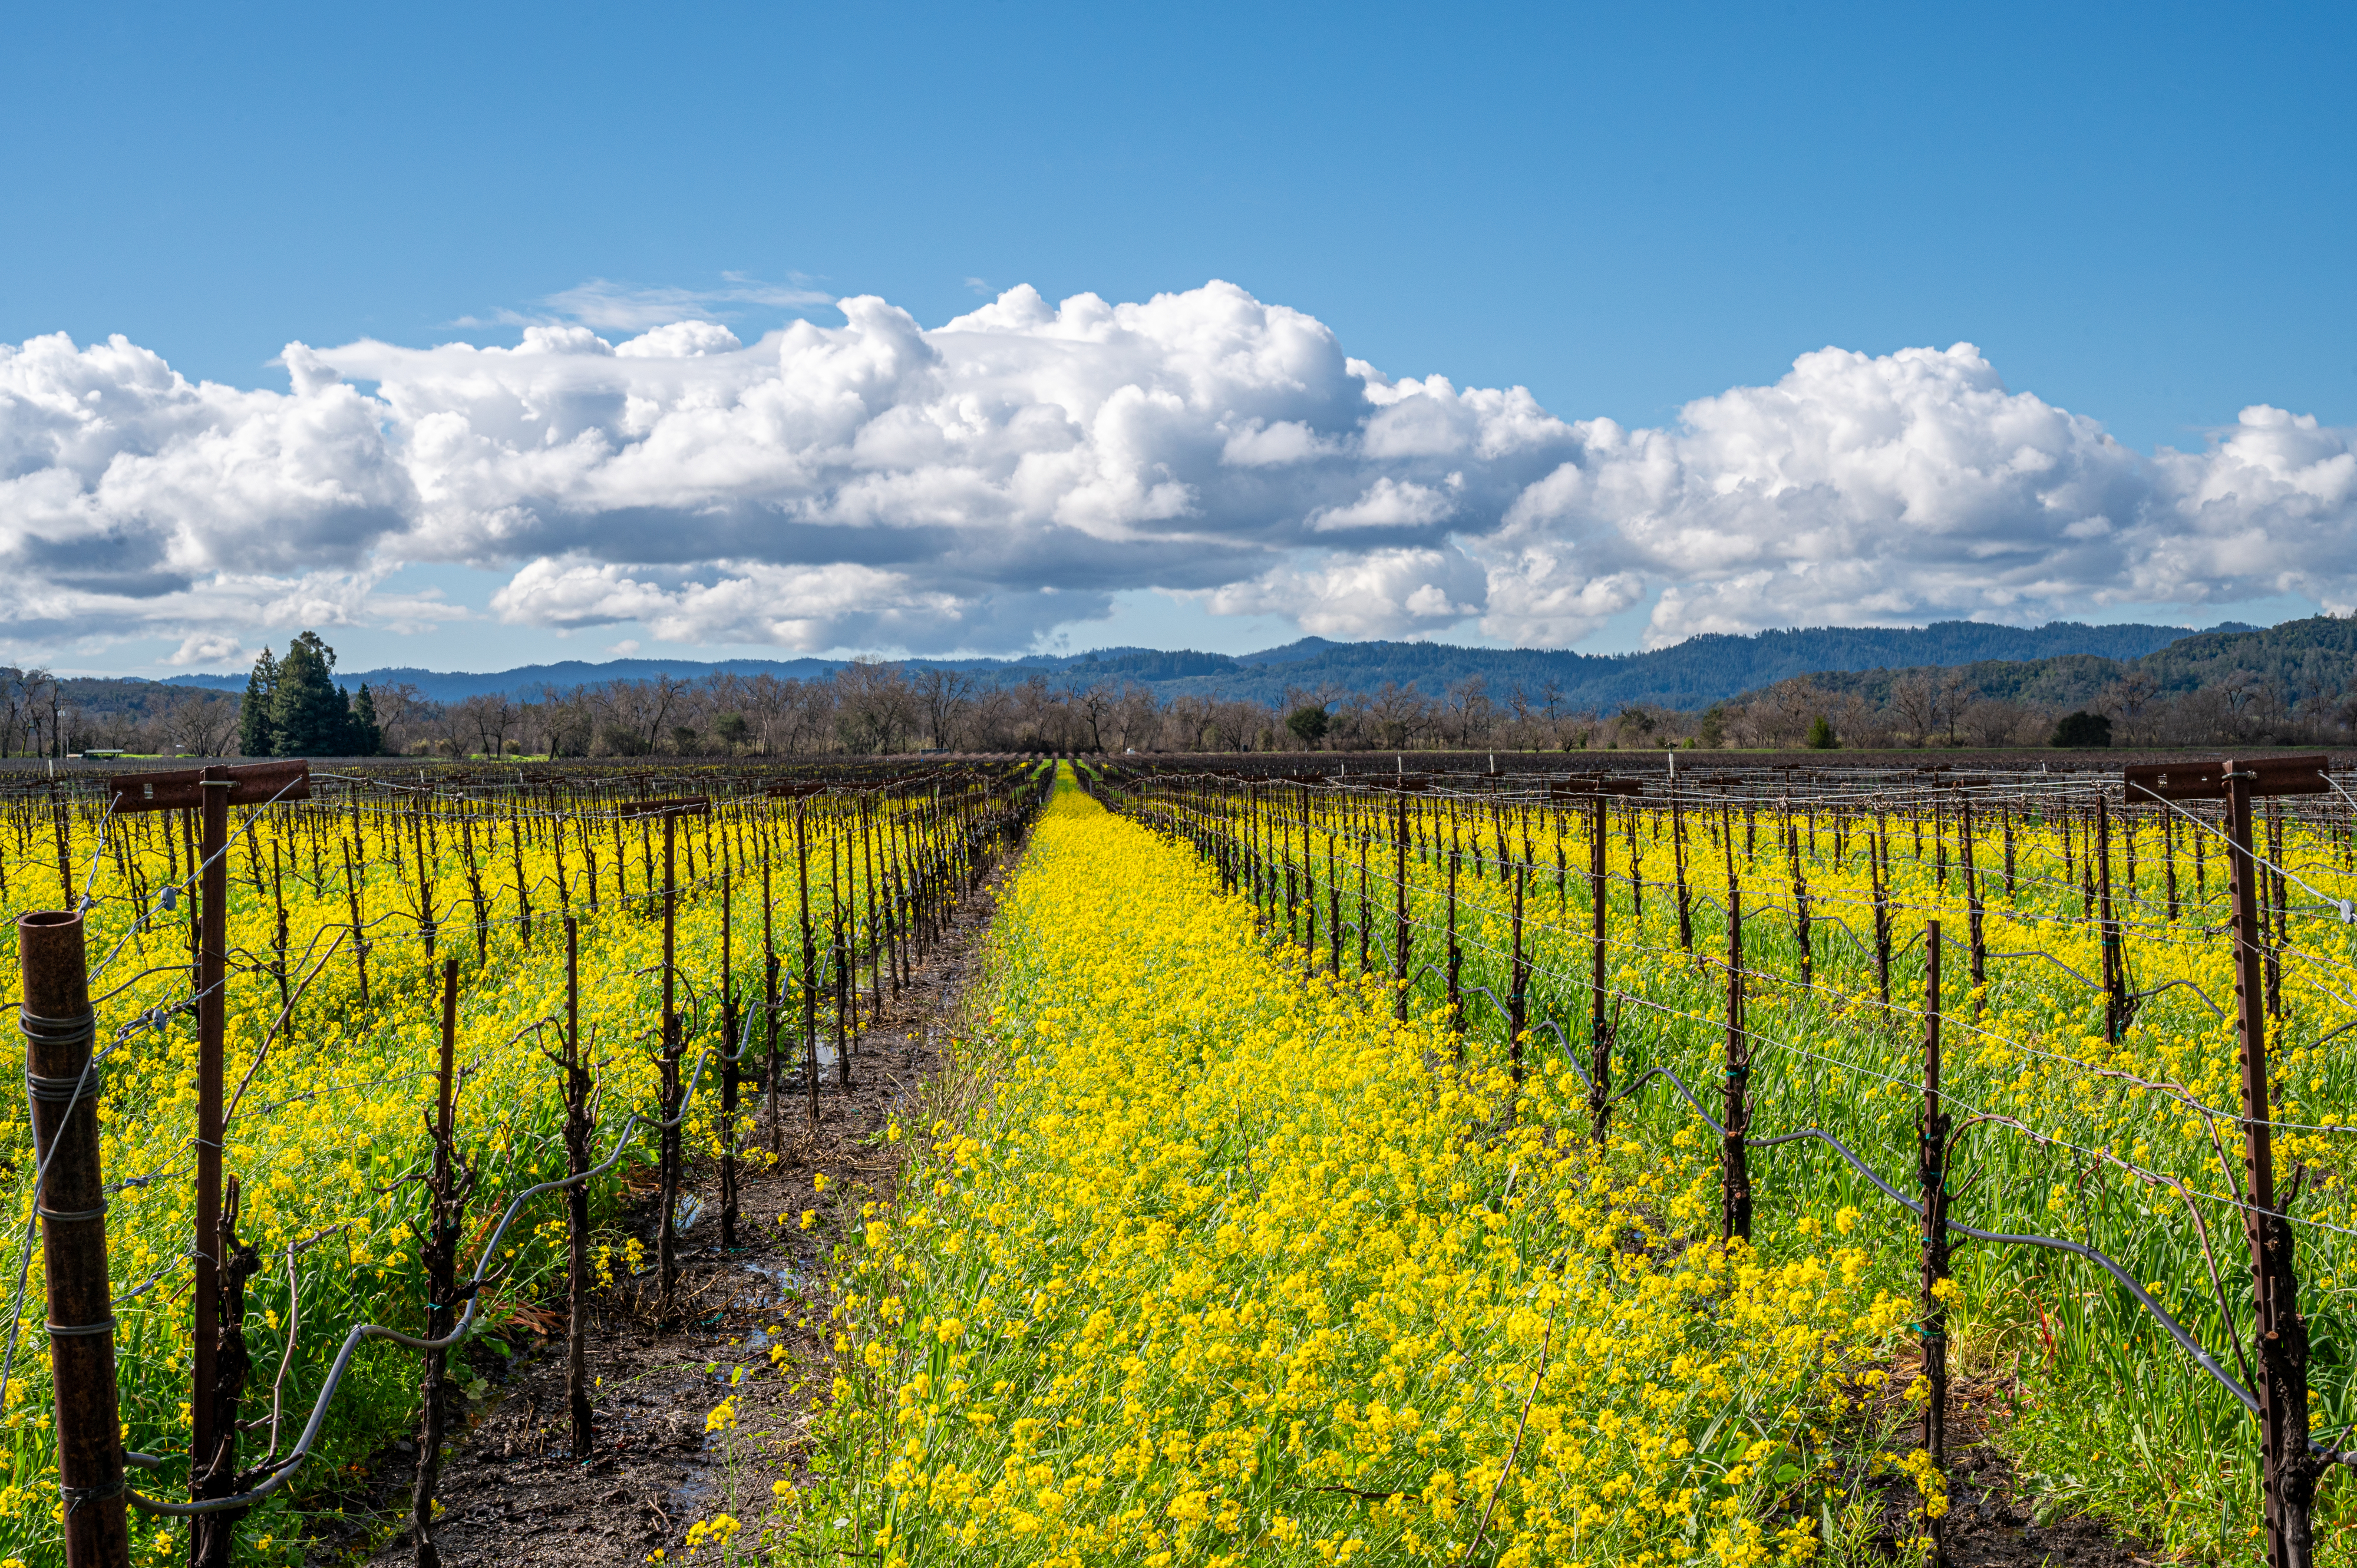 Vineyard rows with mustard flowers in bloom, cloudy skies above